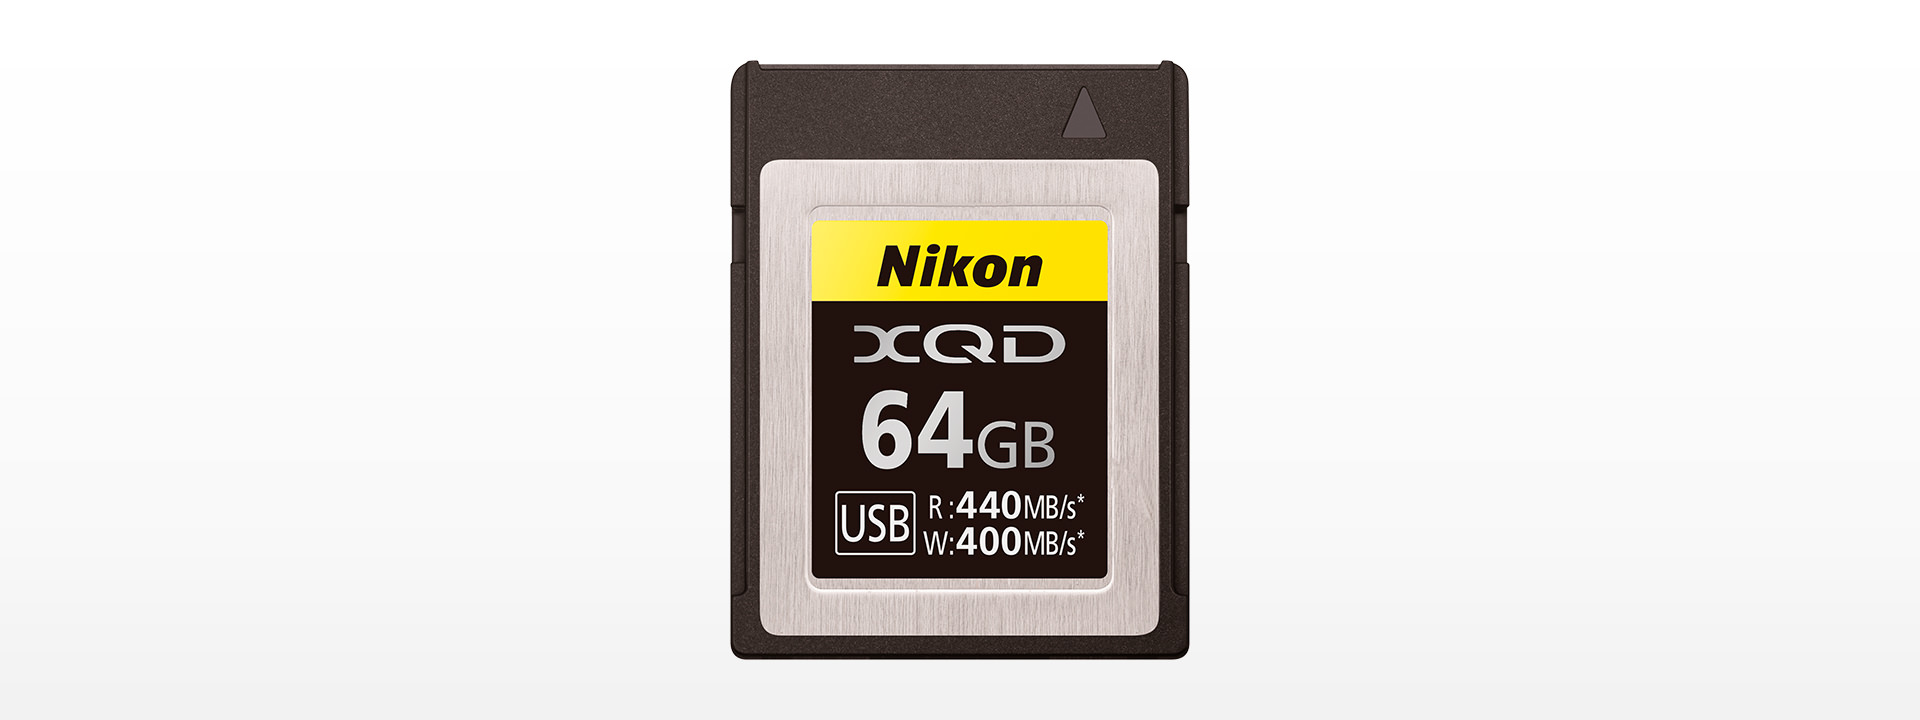 XQDメモリーカード64GB MC-XQ64G - 概要 | ニコンオリジナルグッズ